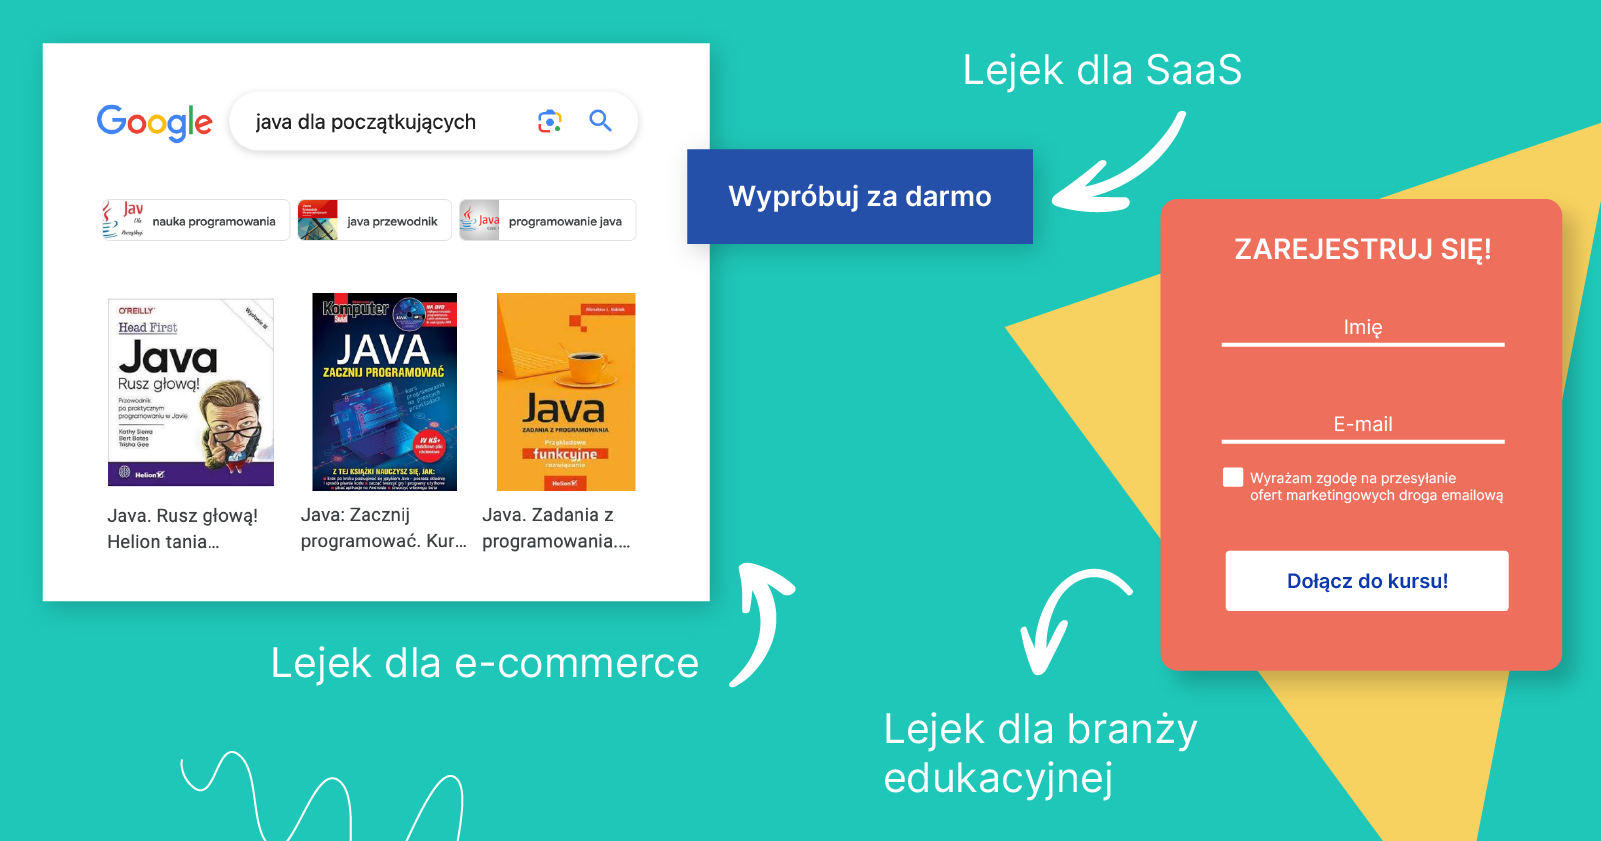 Przykłady lejków konwersji dla SaaS, e-commerce i branży edukacyjnej